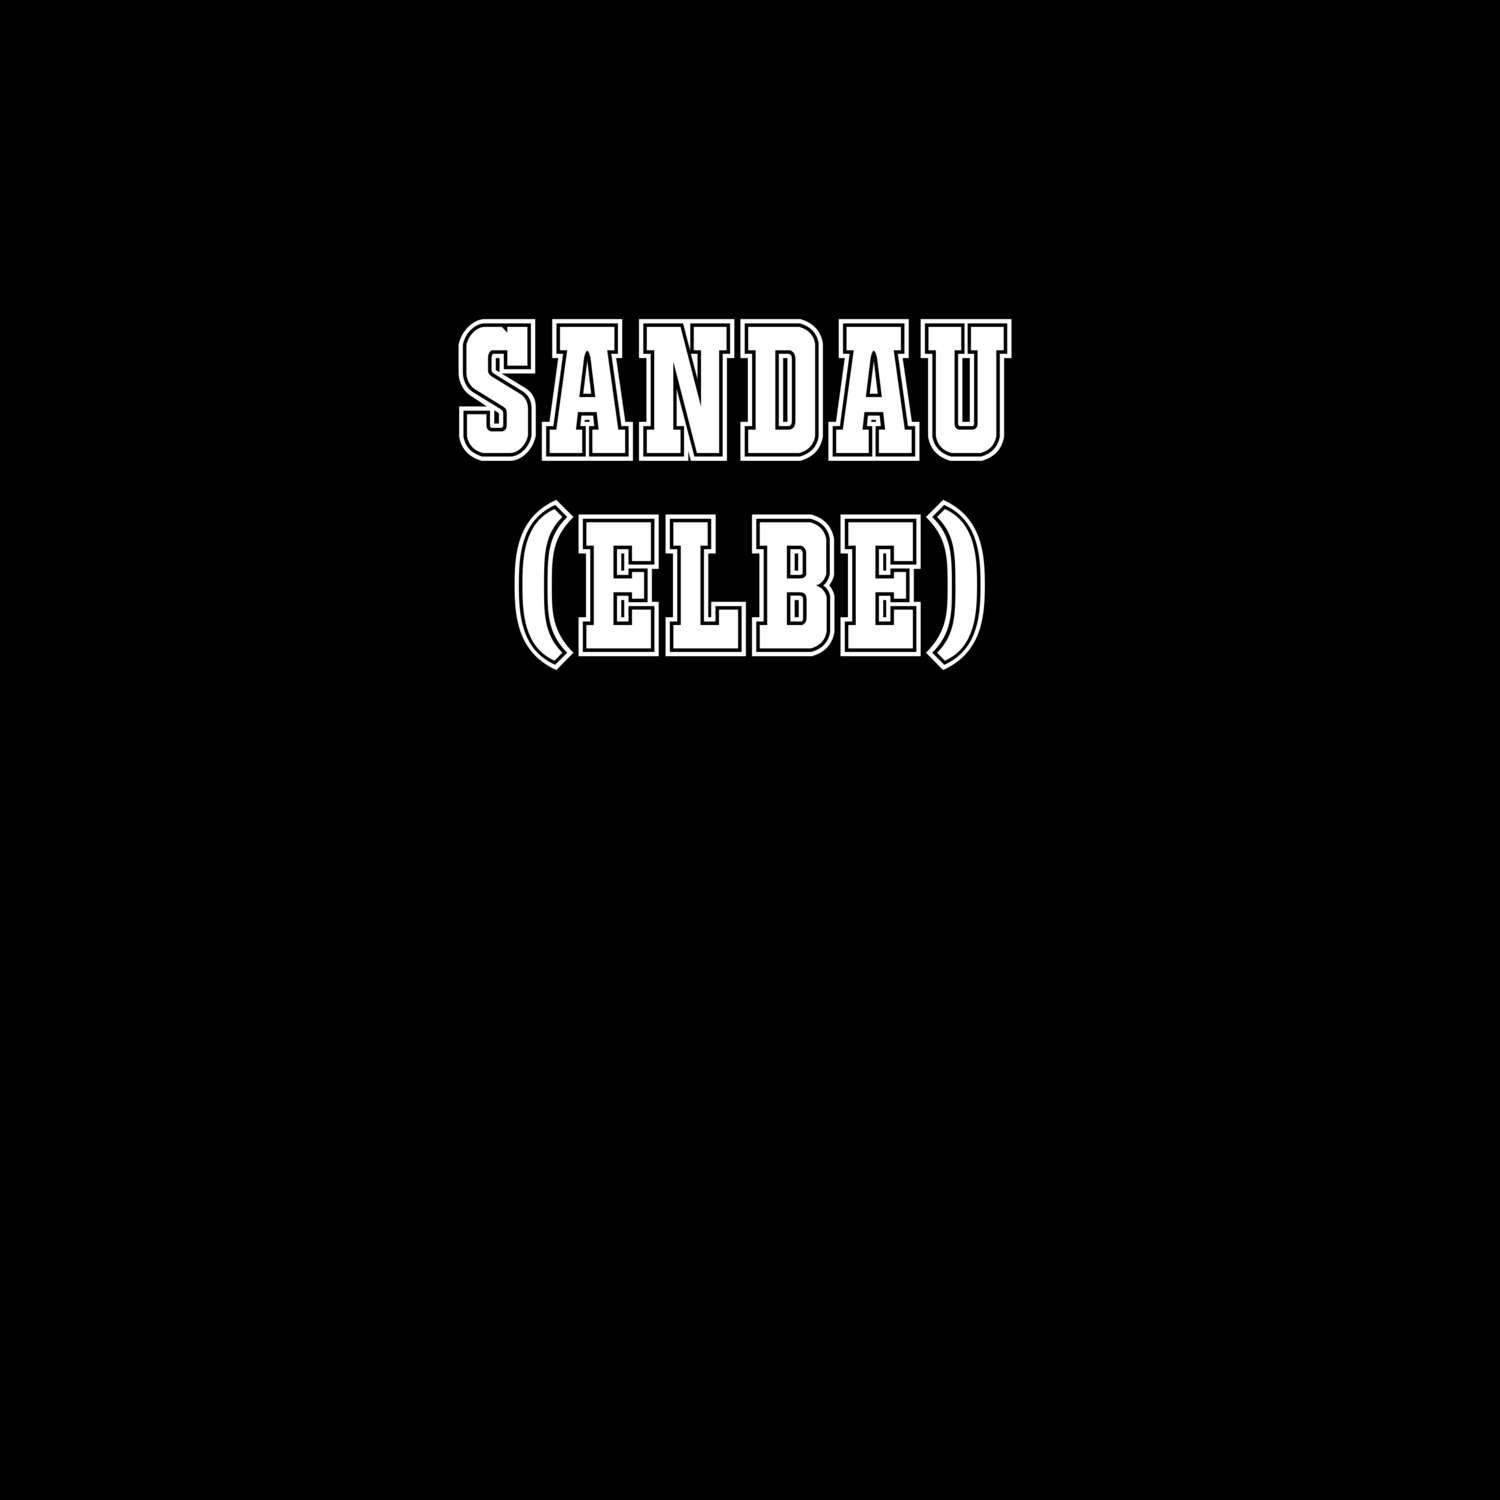 Sandau (Elbe) T-Shirt »Classic«